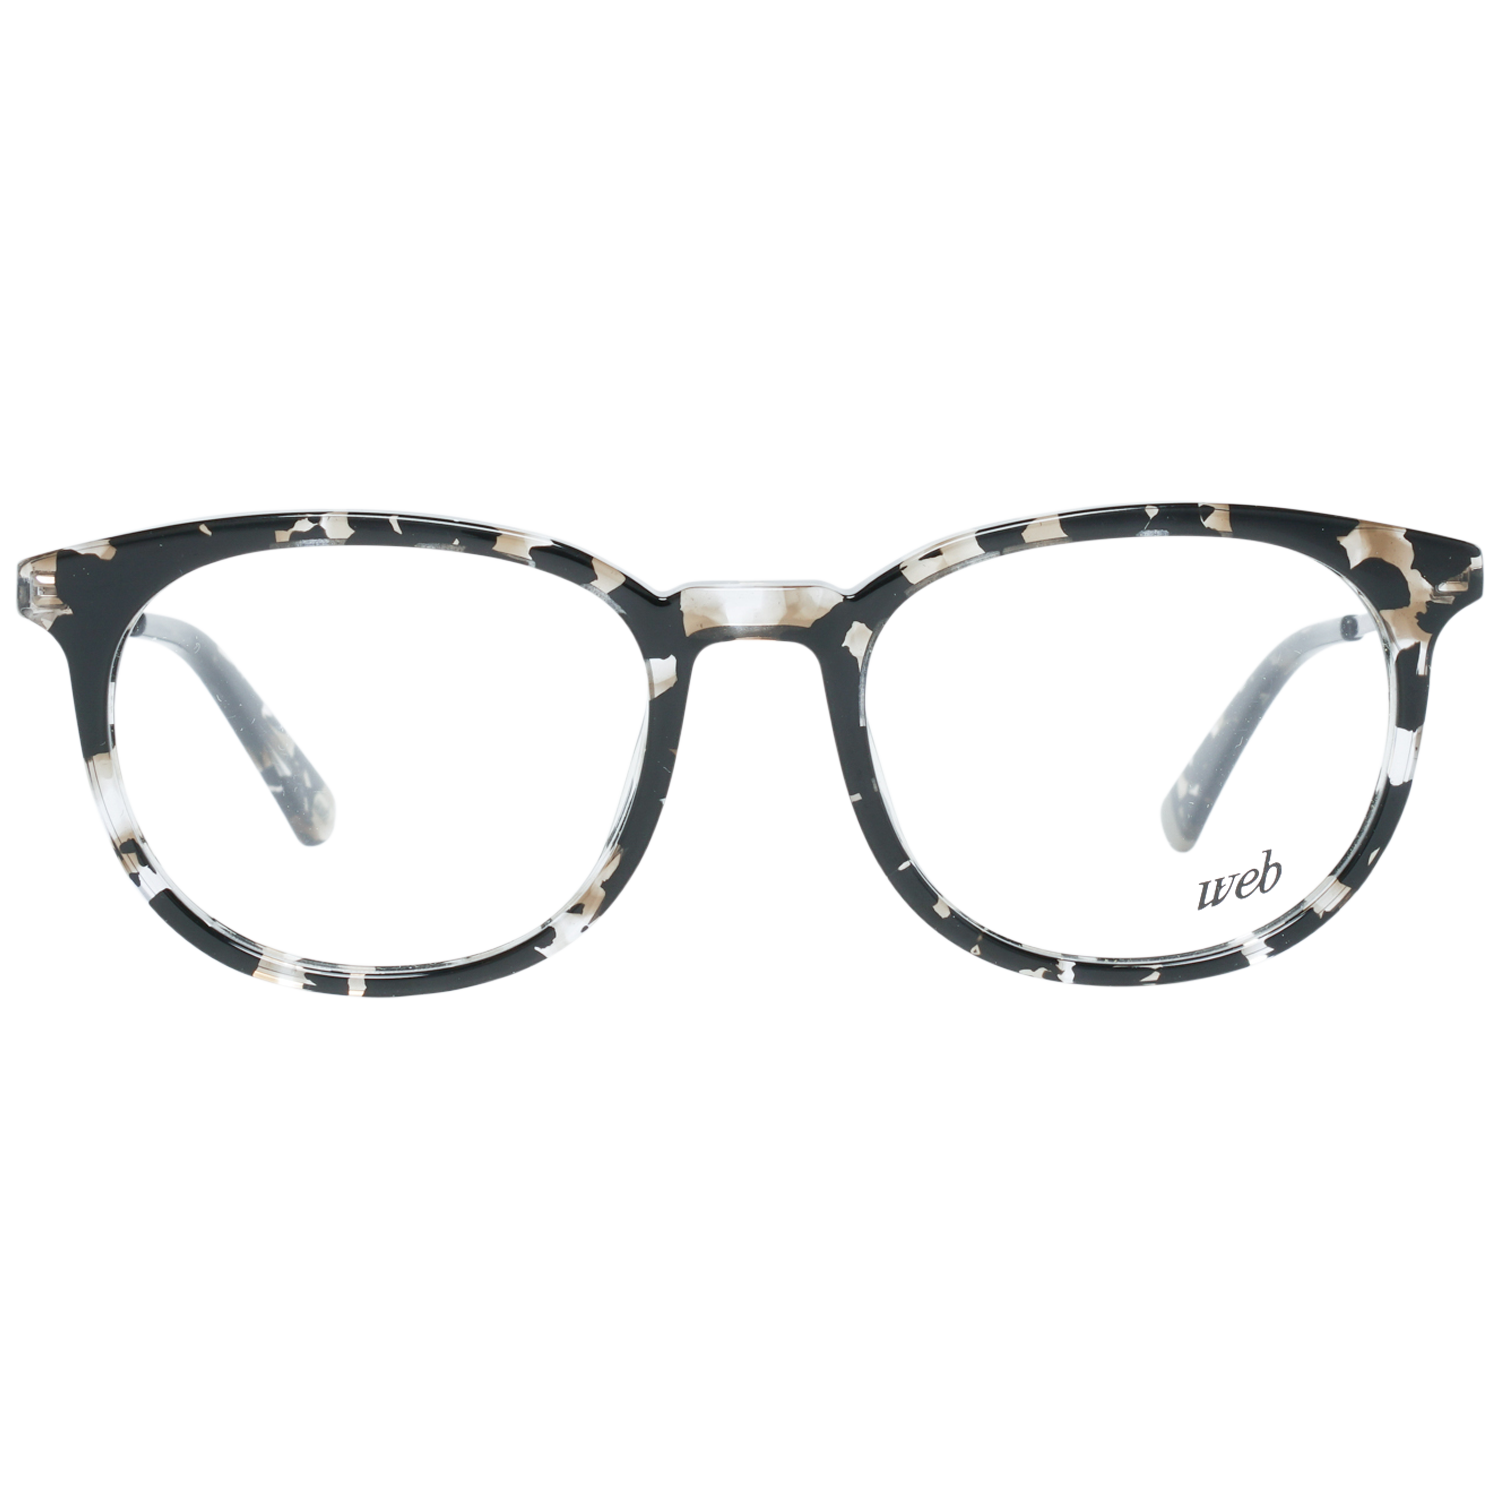 Web Frames Web Glasses Optical Frame WE5246 055 52 Eyeglasses Eyewear UK USA Australia 